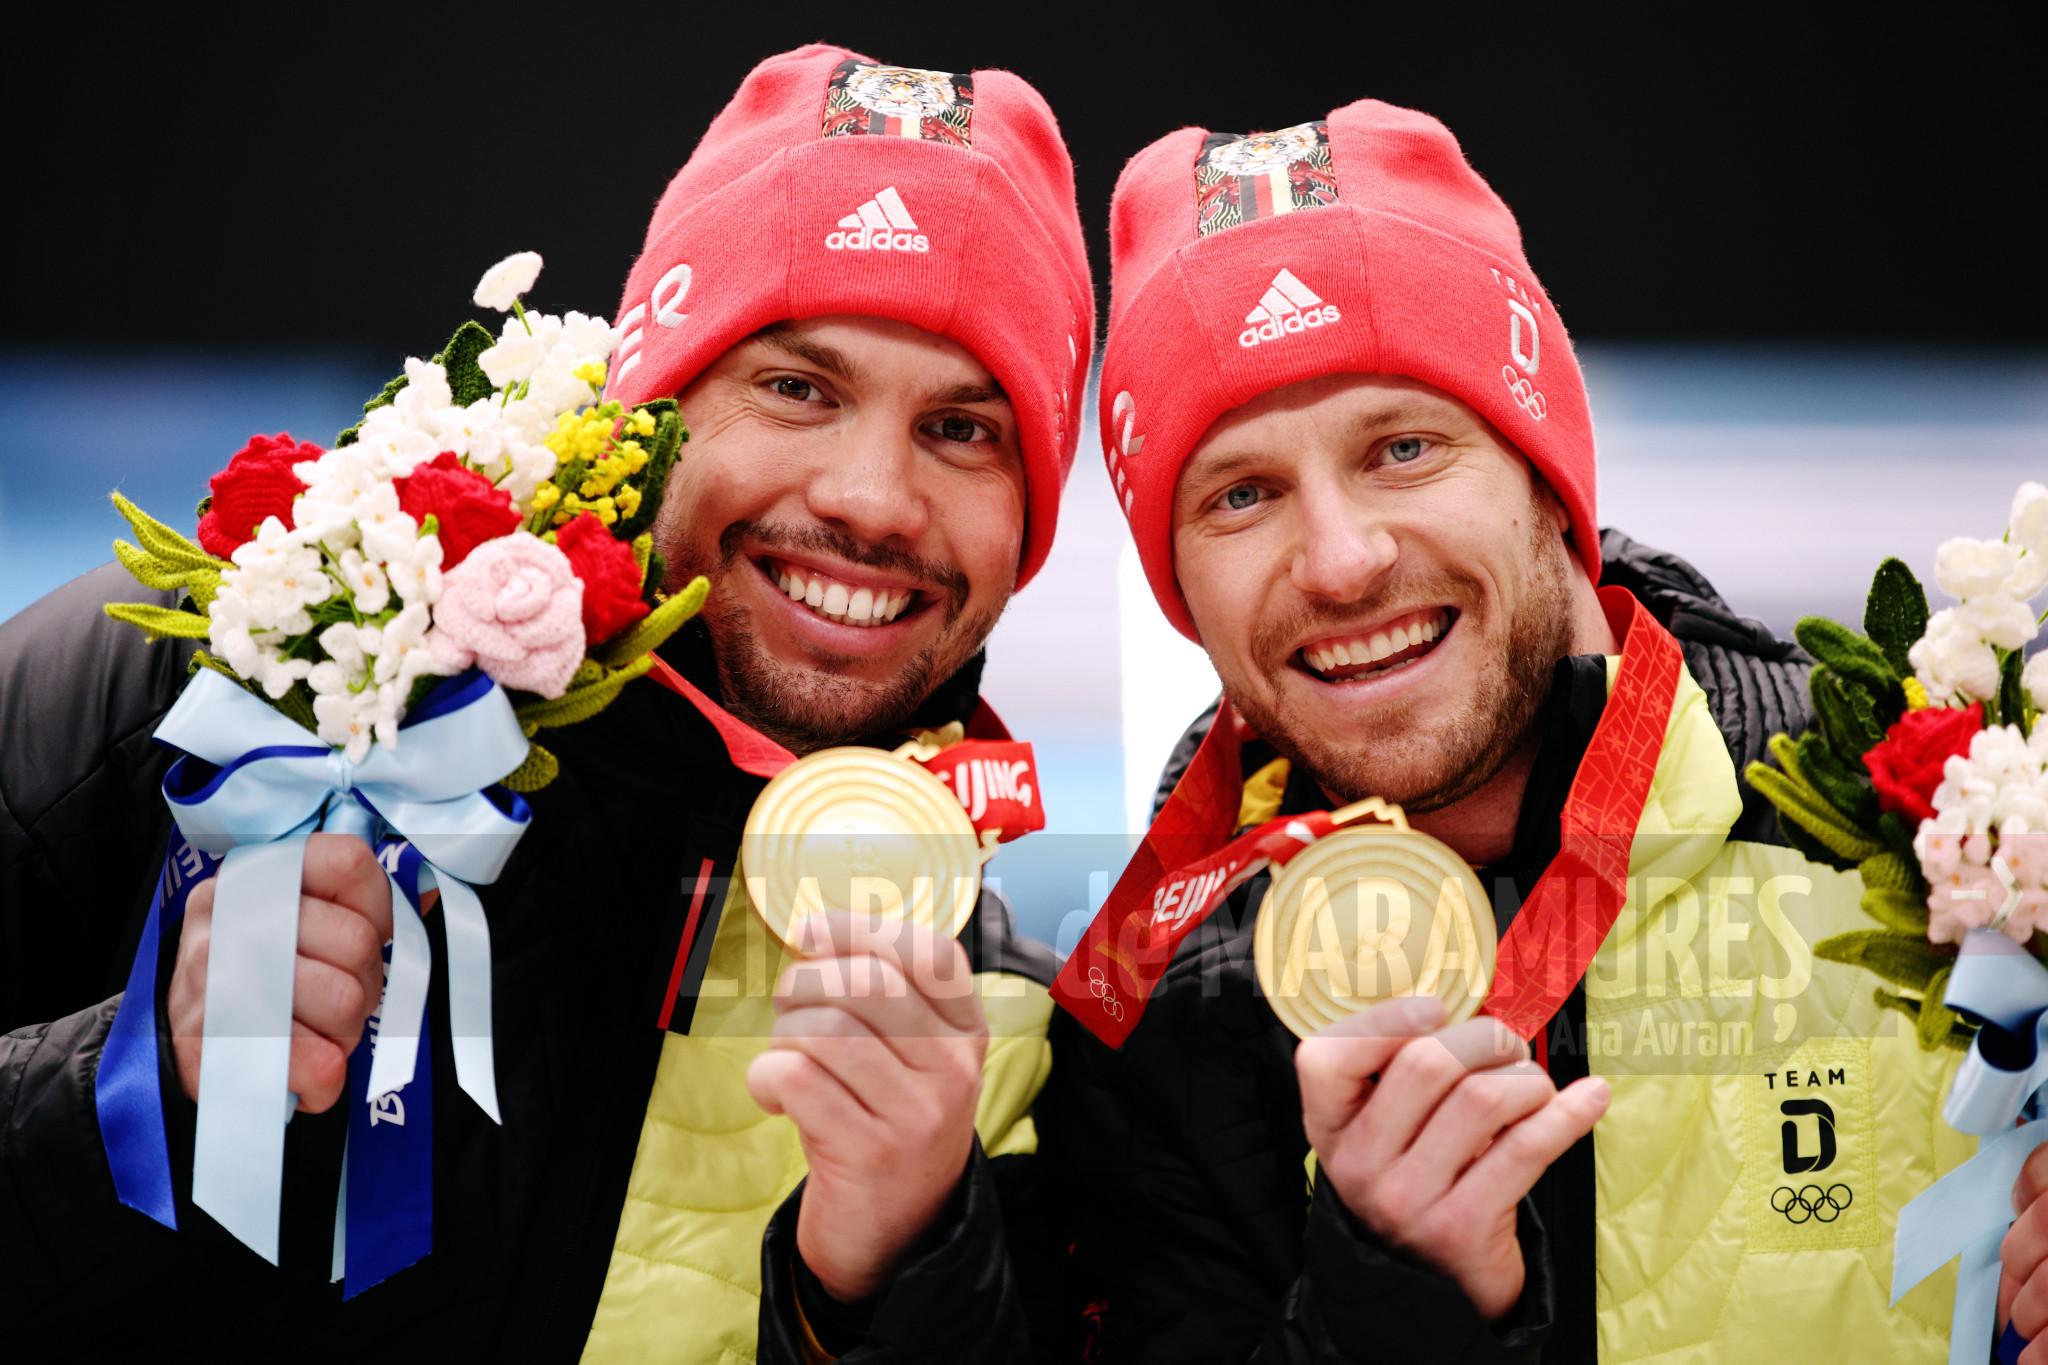 JO 2022: Tobias Wendl şi Tobias Arlt au cucerit titlul olimpic în proba de dublu la sanie; românii Vasile Marian Gîtlan şi Darius Lucian Şerban, pe locul 14